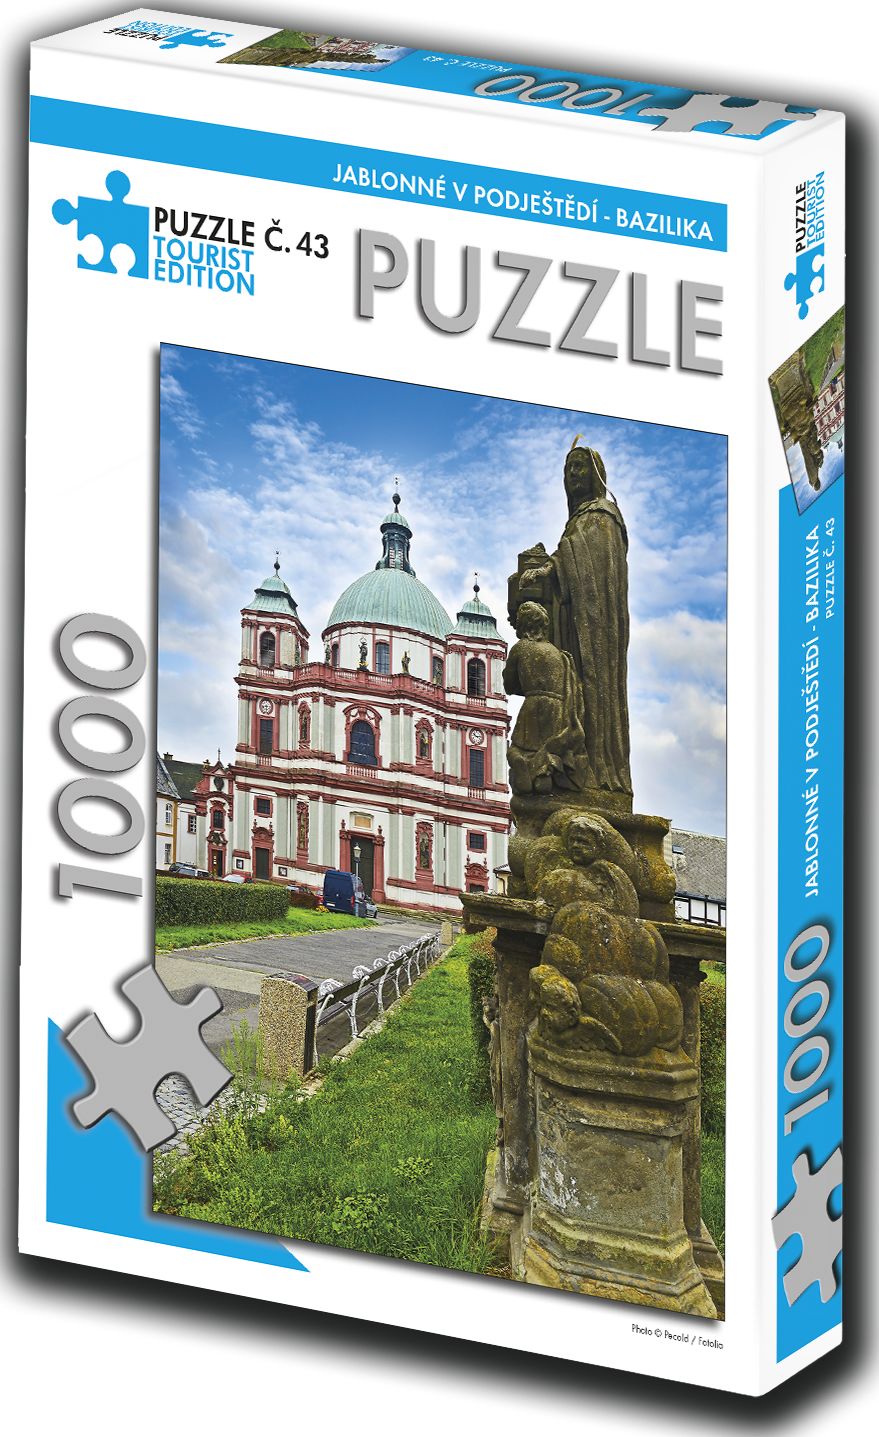 TOURIST EDITION Puzzle Jablonné v Podještědí, bazilika 1000 dílků (č.43) - obrázek 1